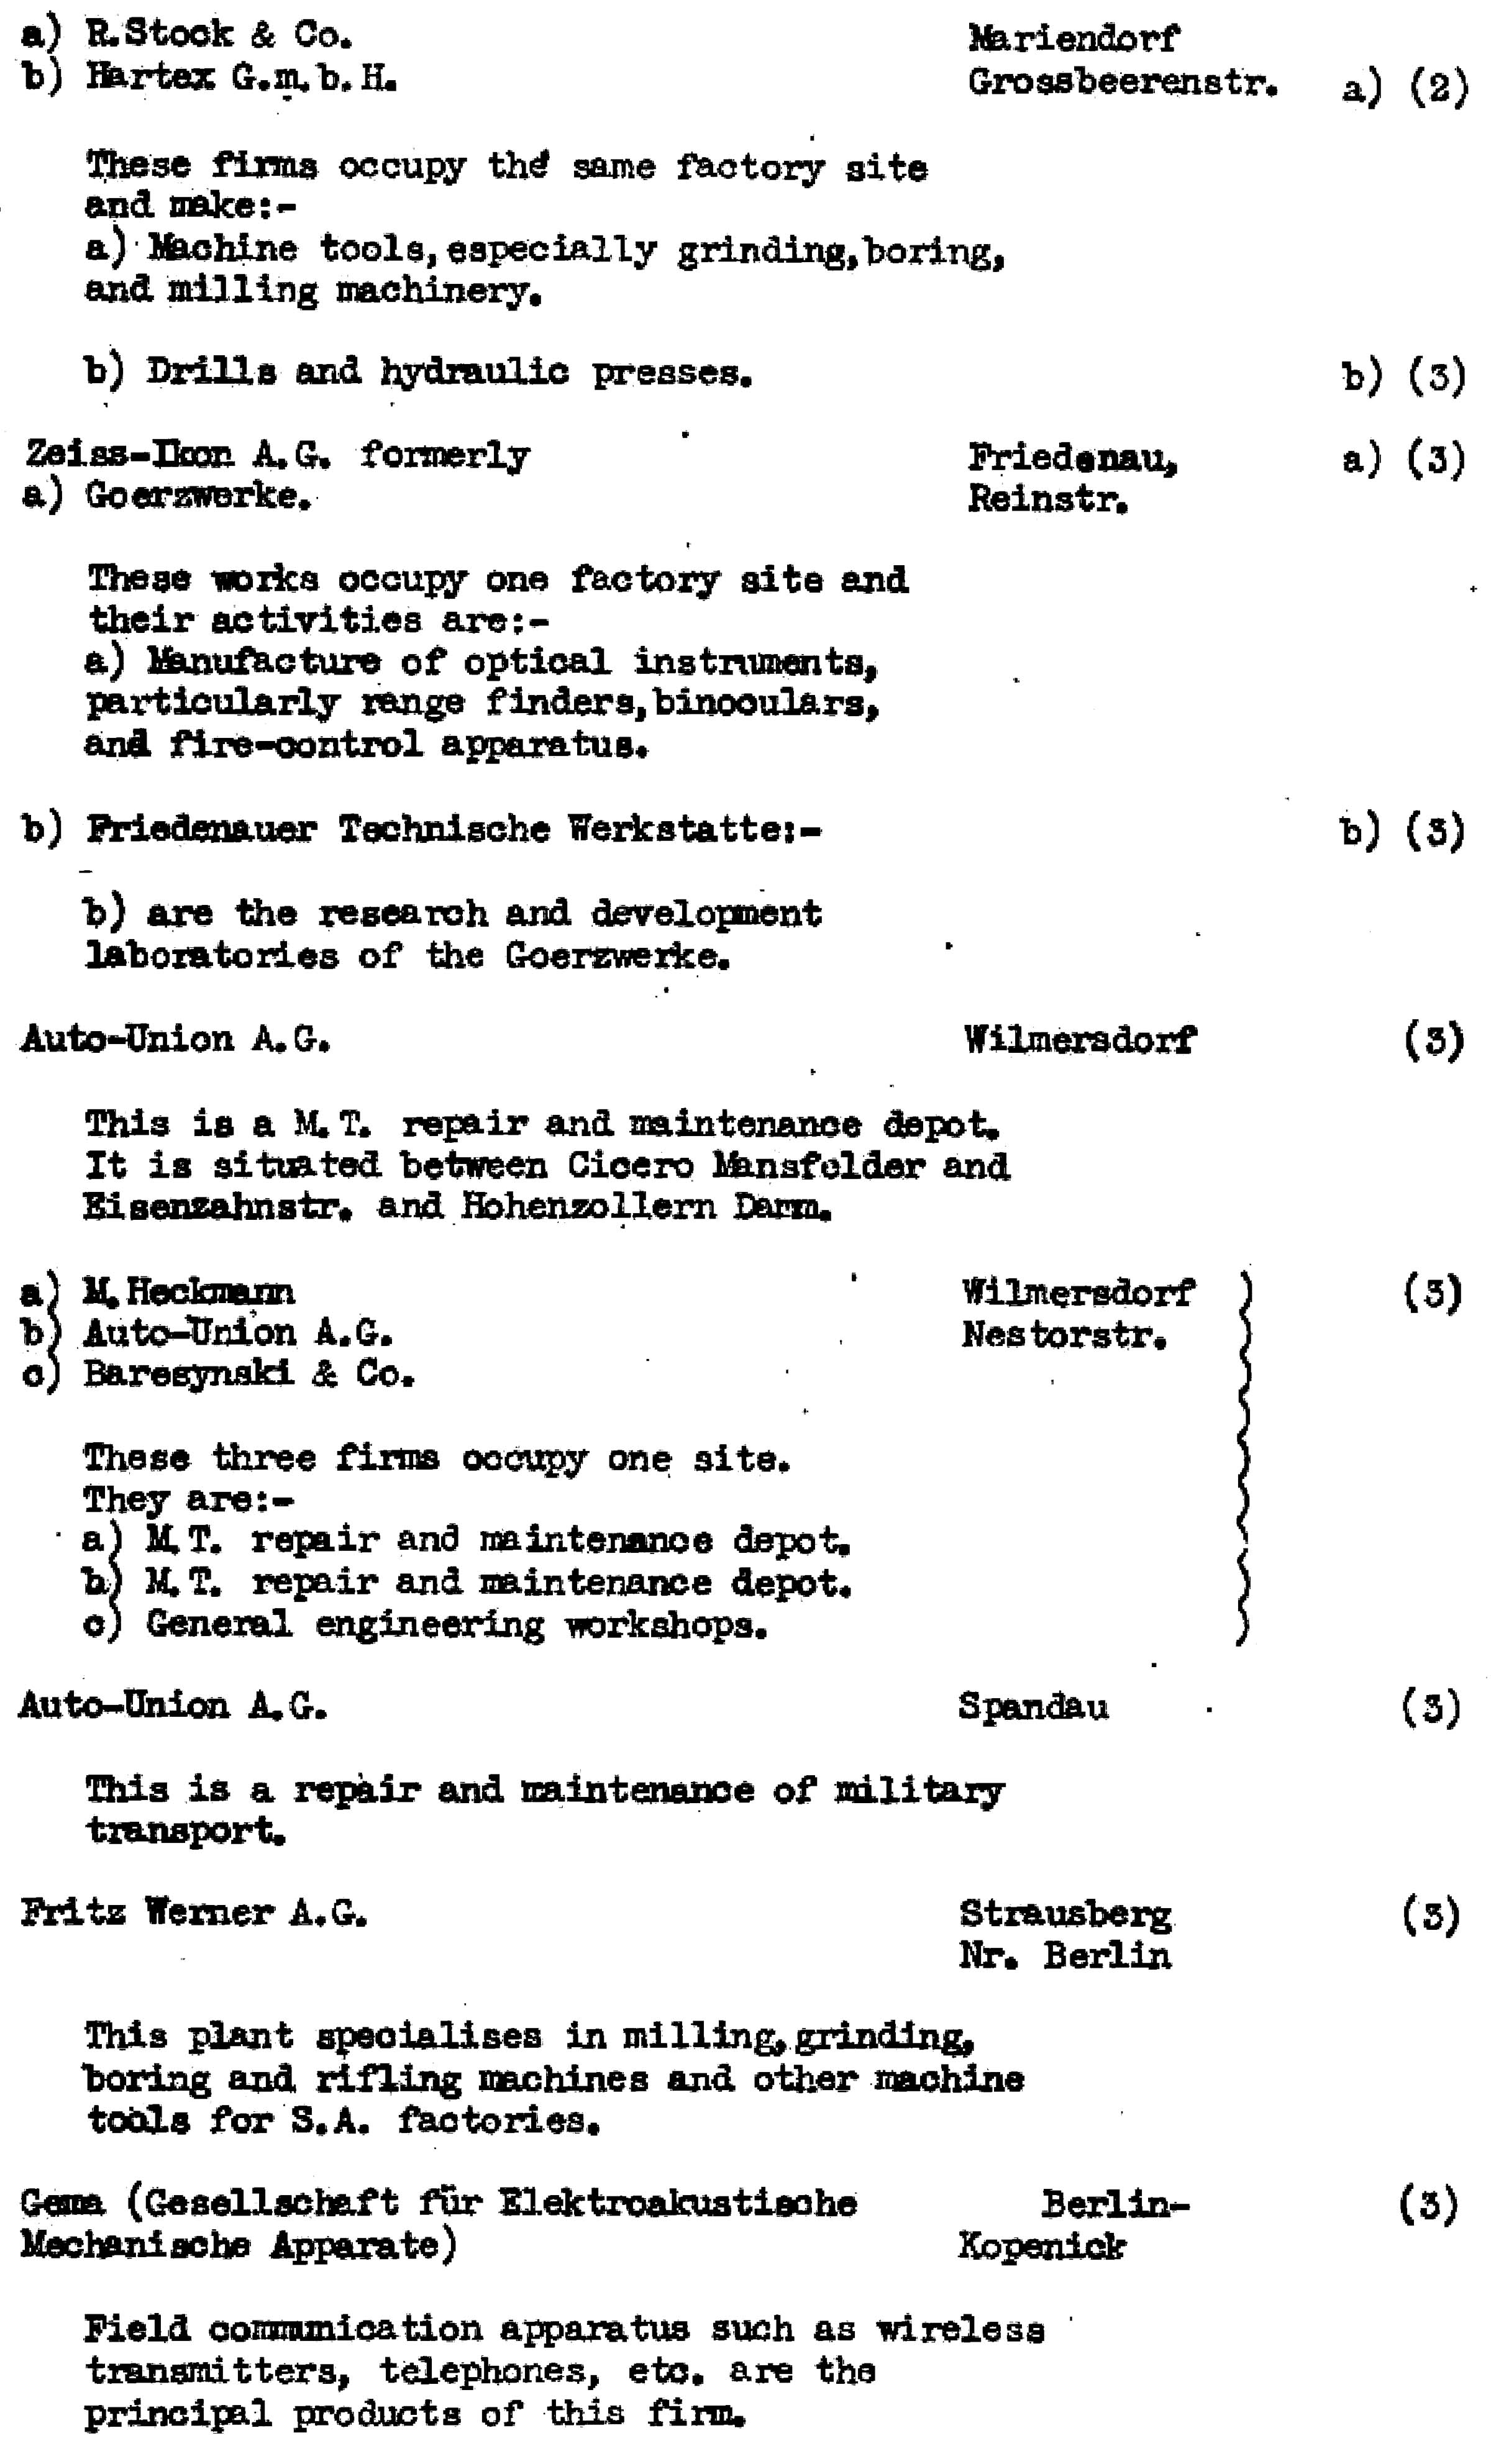 Die Ziele der alliierten Luftangriffe in Berlin im Zeiten Weltkrieg im Bomber's Baedeker - Originaldokument Seite 56